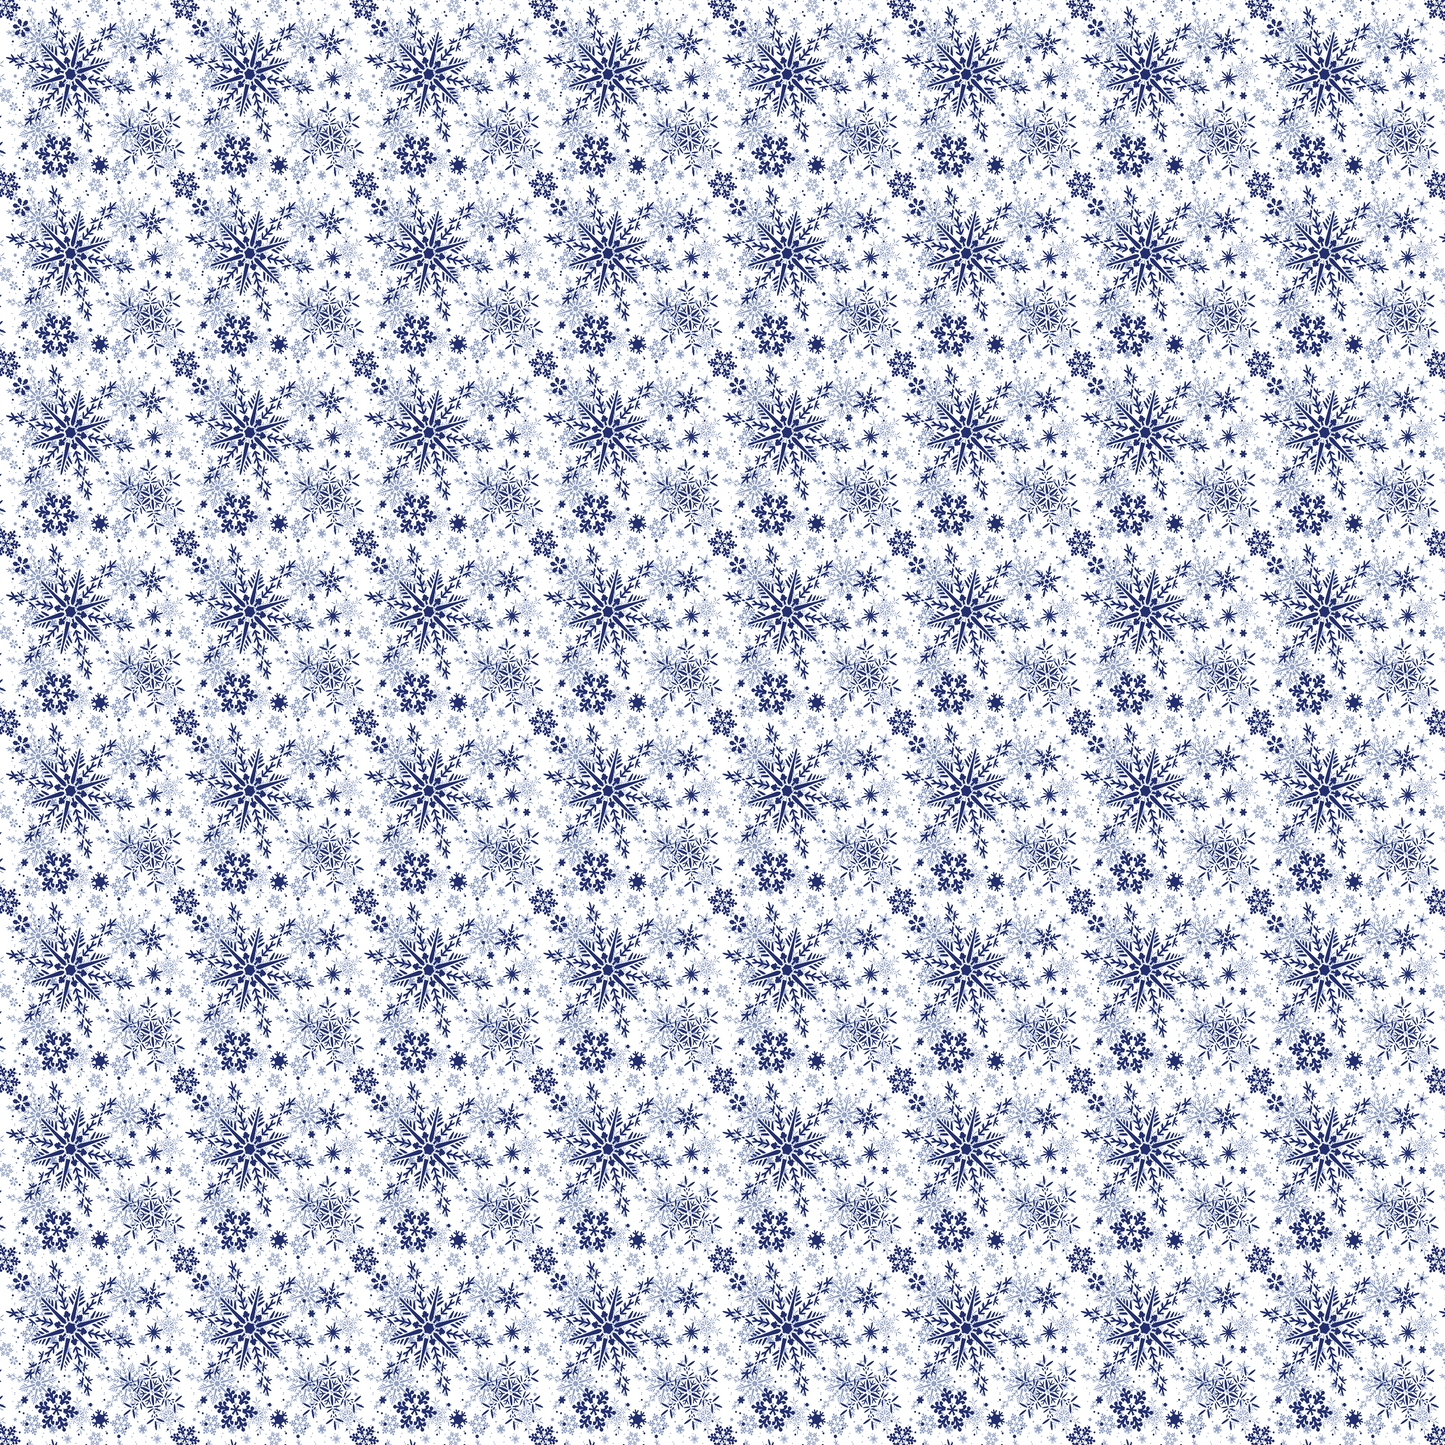 Flocons de neige bleus sur fond blanc 005